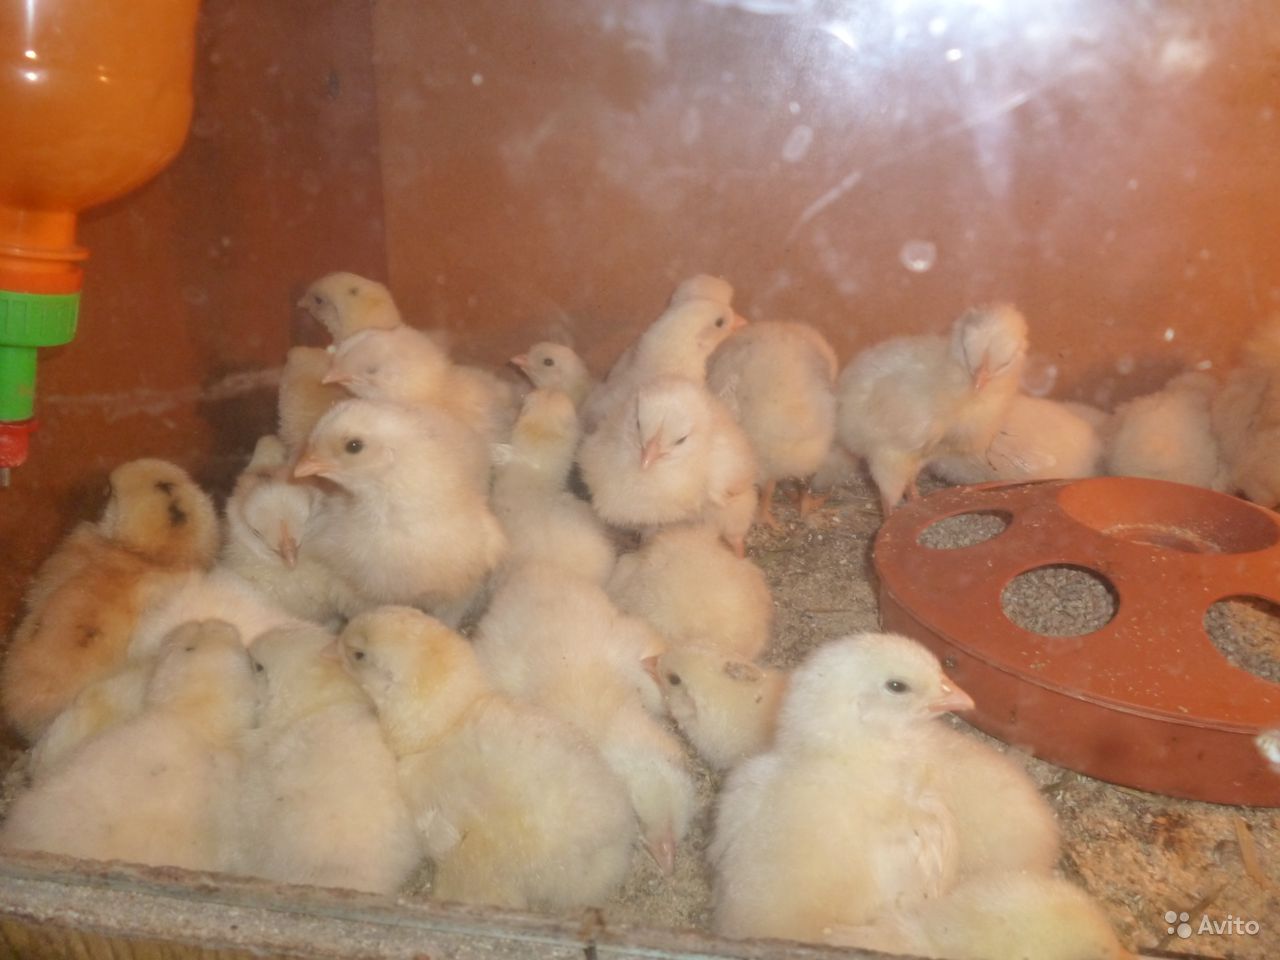 Выгодно ли разводить цыплят на продажу или для себя, покупая их каждый сезон?